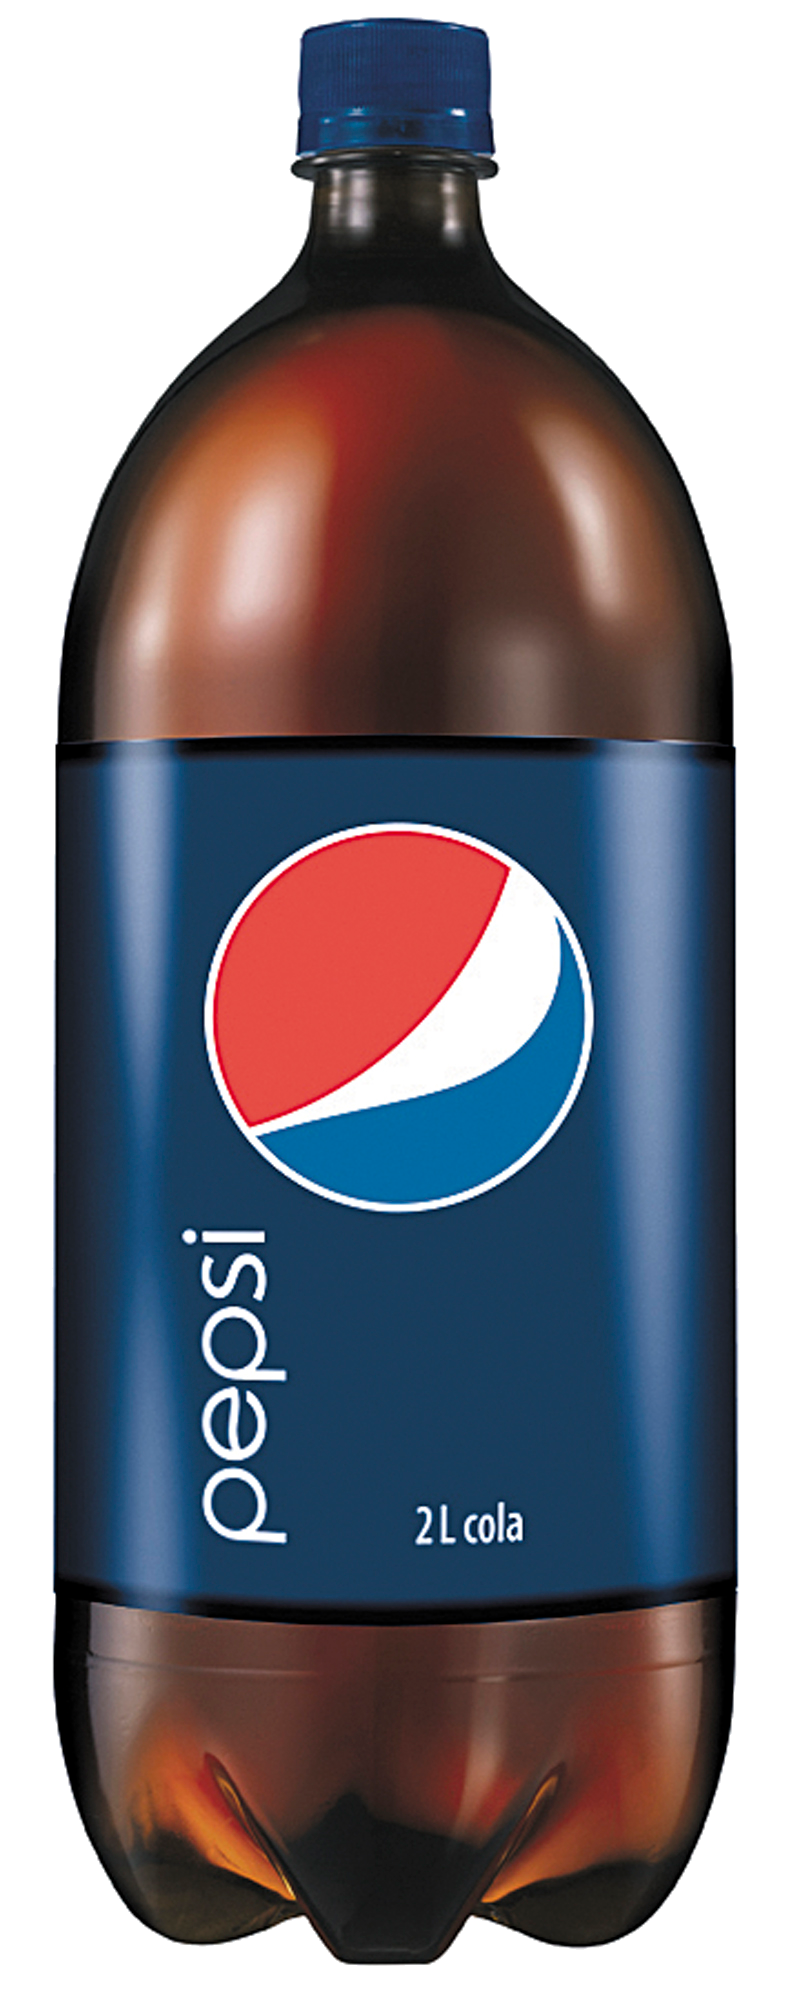 Pepsi đóng hộp